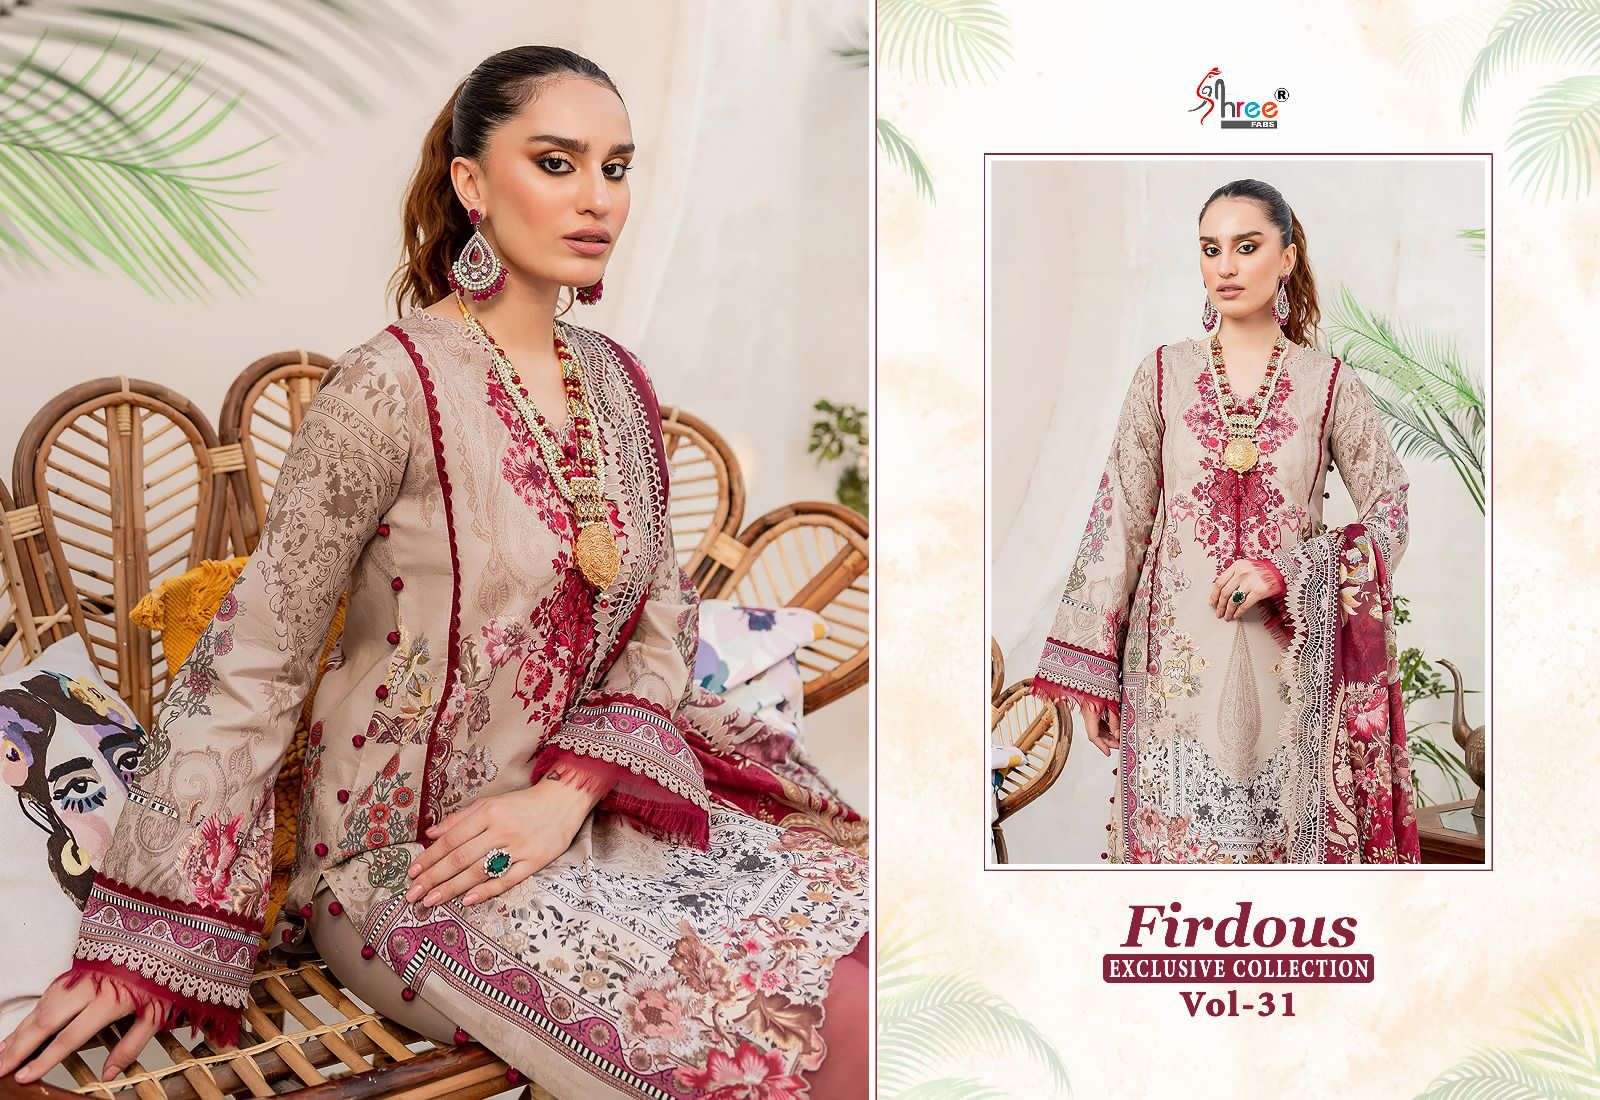 Shree Firdous Vol 31 Cotton Dupatta Pakistani Suits Wholesale catalog